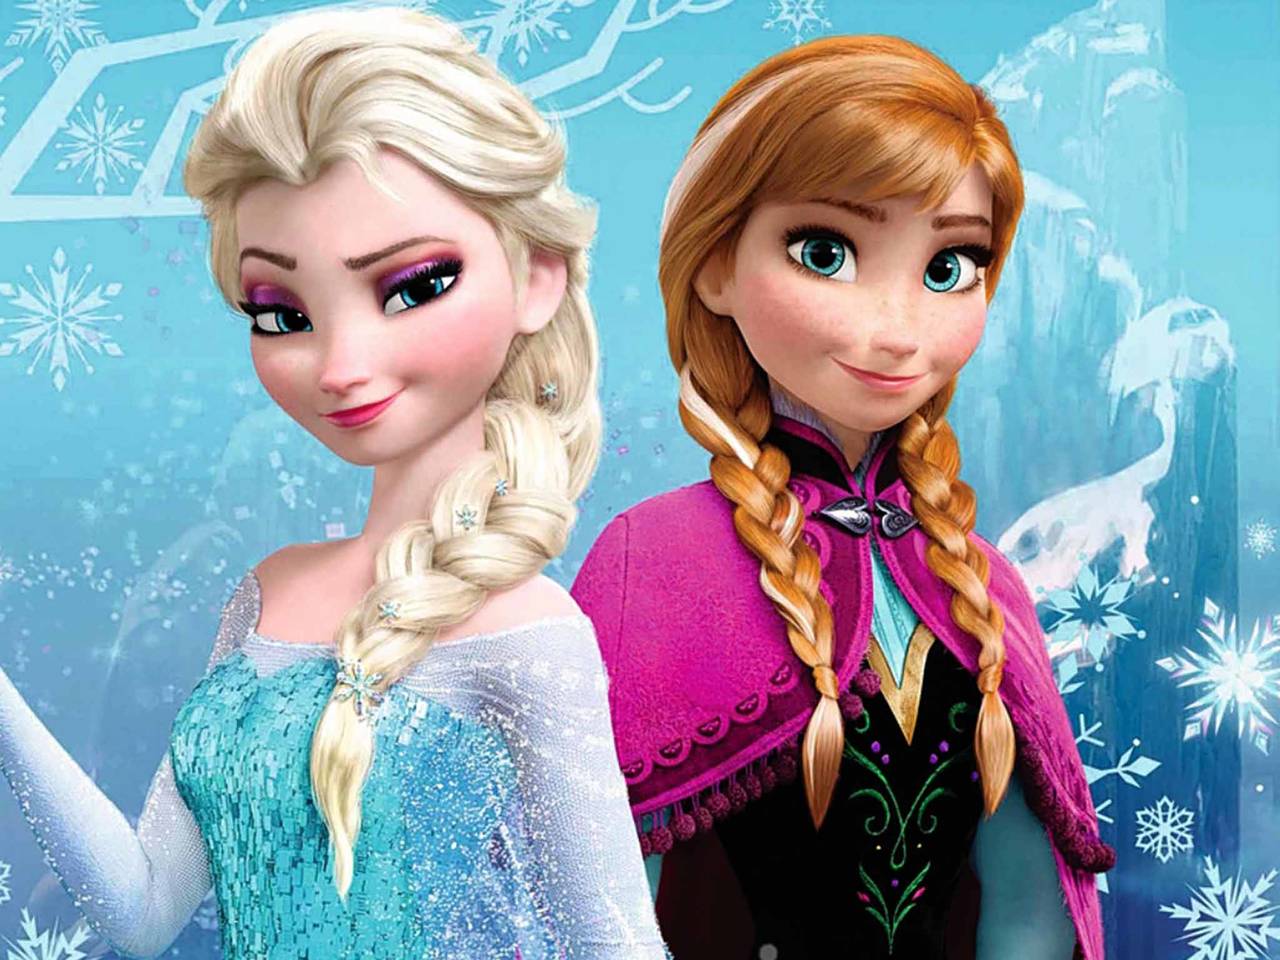 Frozen podría ser la primera película de Disney con una relación amorosa entre personas del mismo sexo